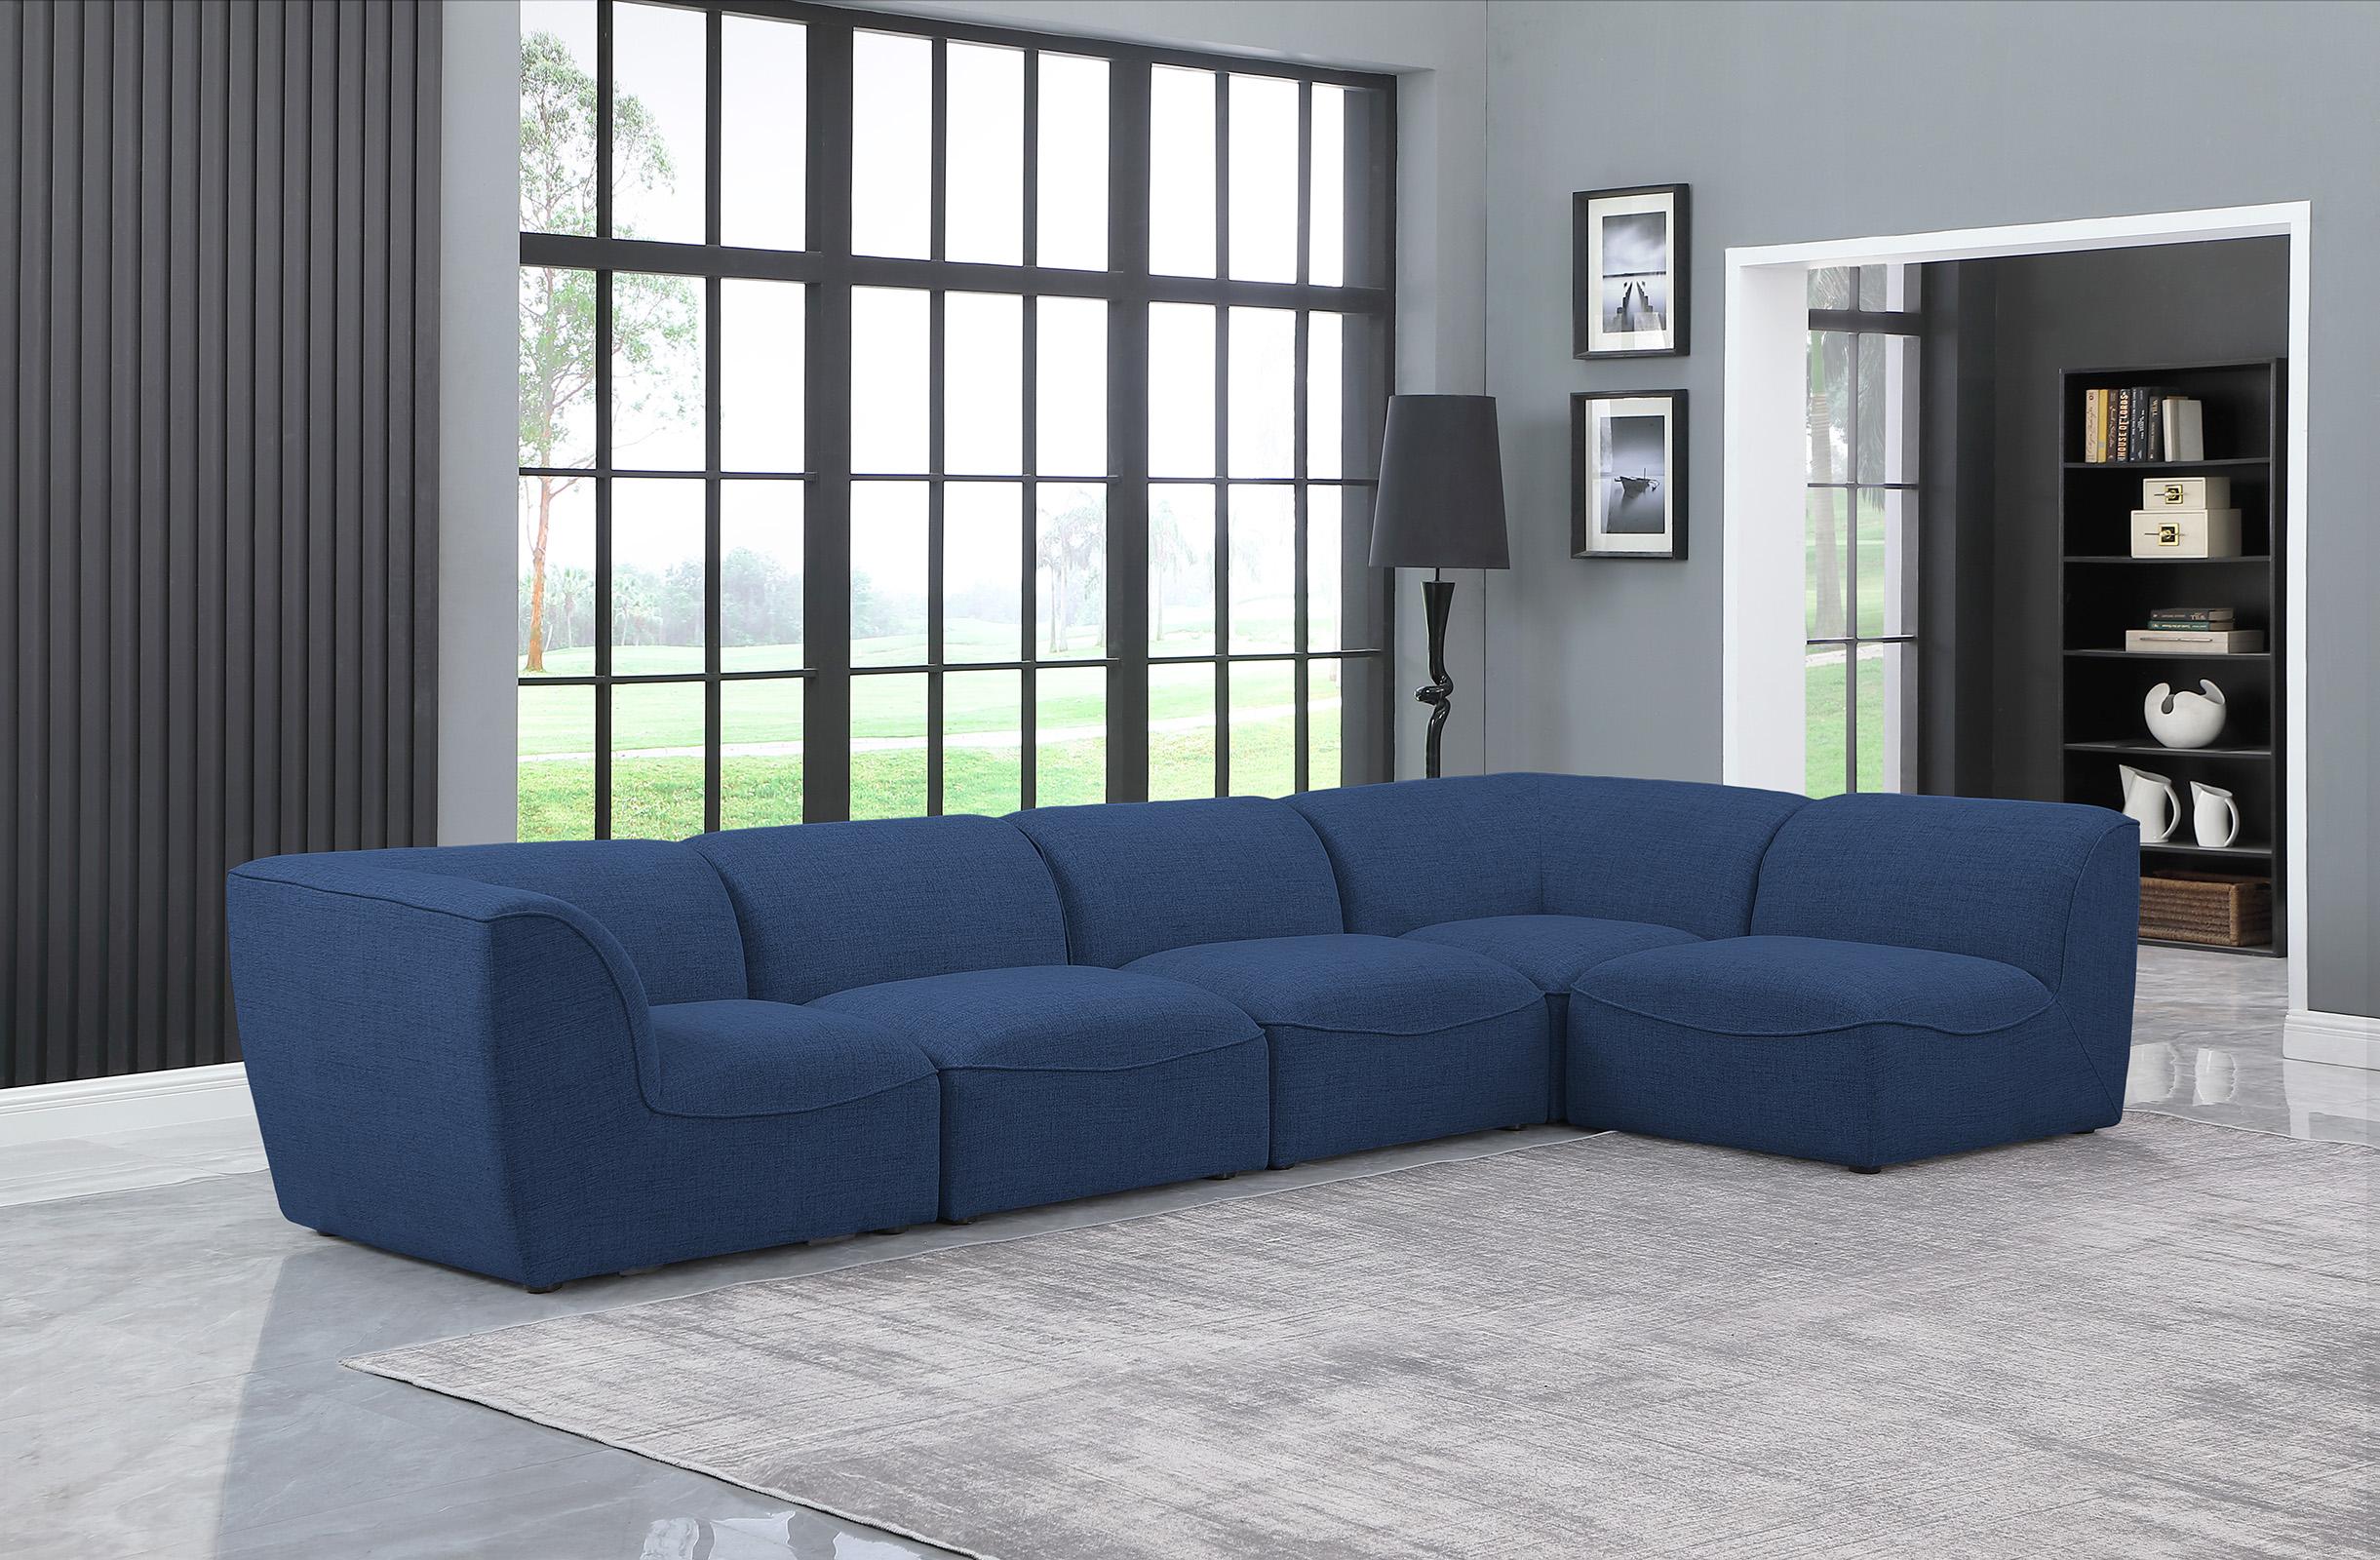 

    
Meridian Furniture MIRAMAR 683Navy-Sec5D Modular Sectional Sofa Navy 683Navy-Sec5D
